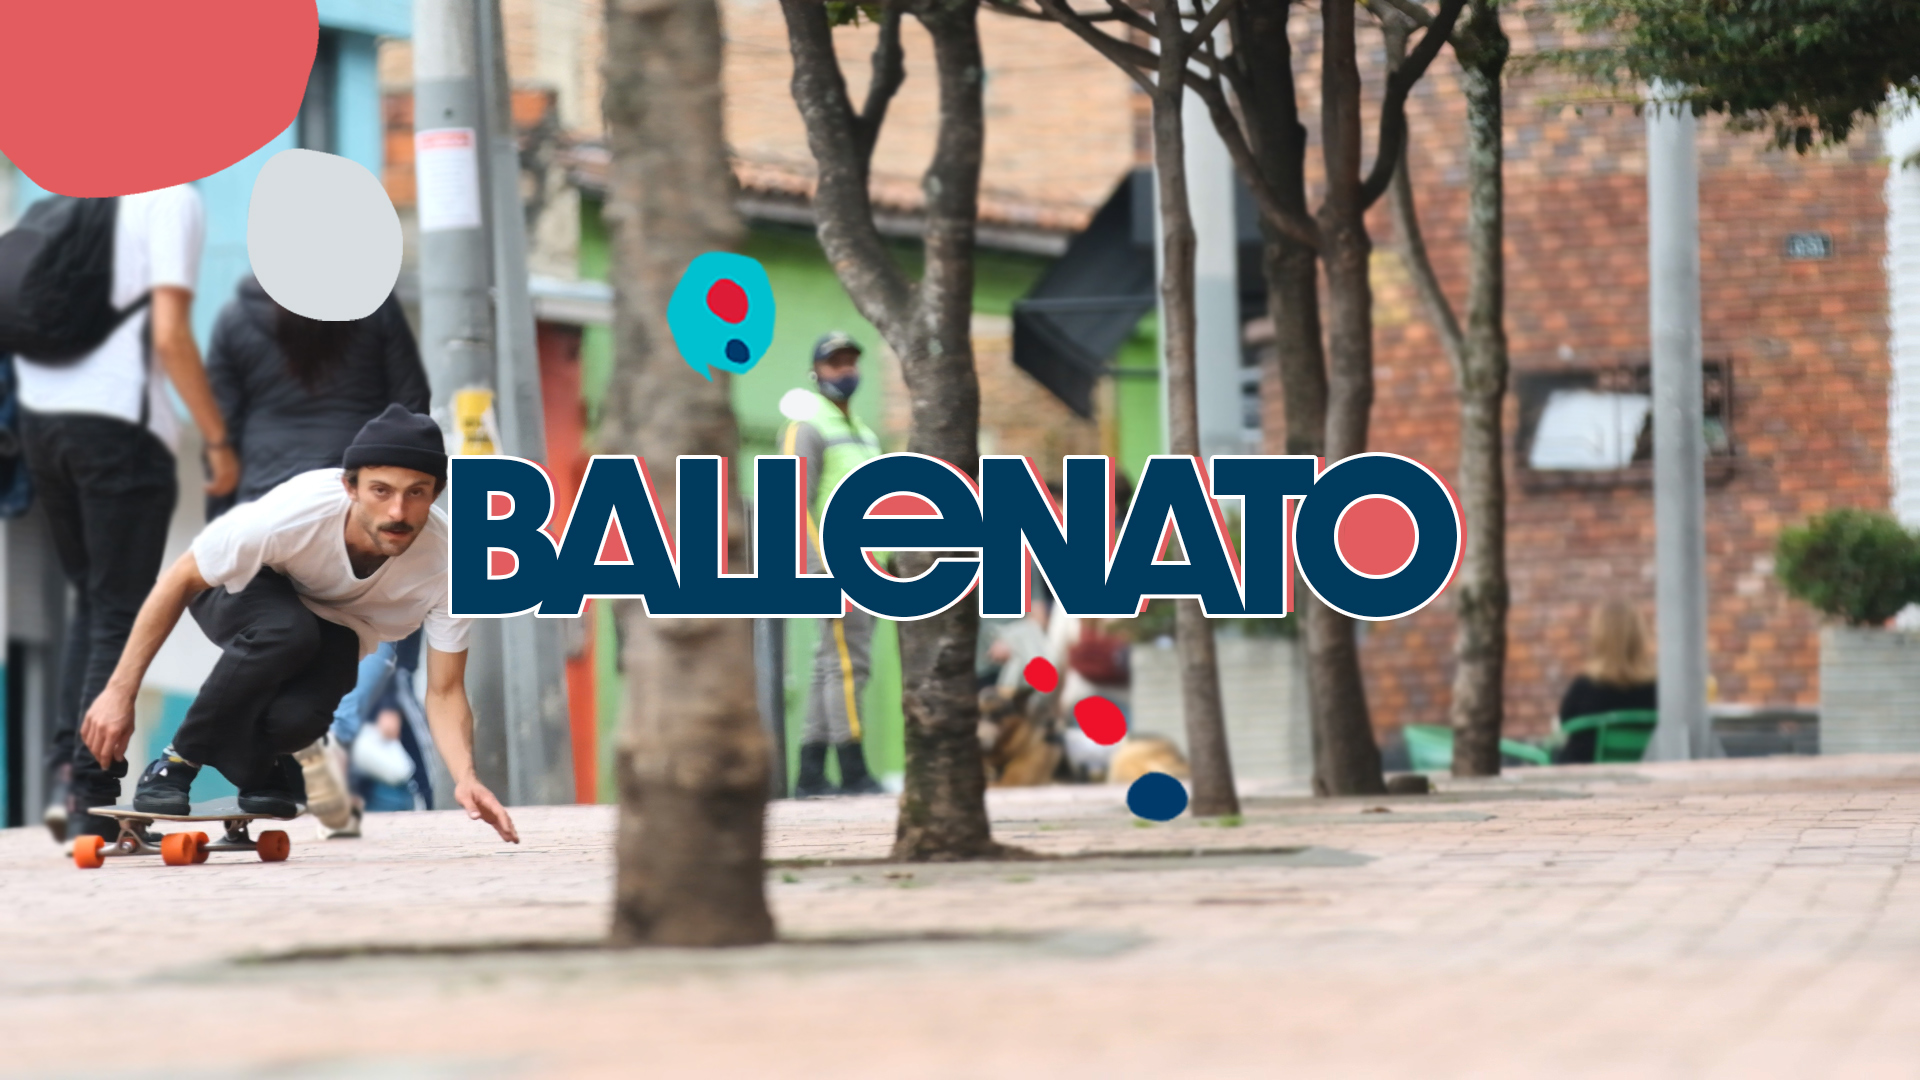 Loaded Ballona: Ballenato